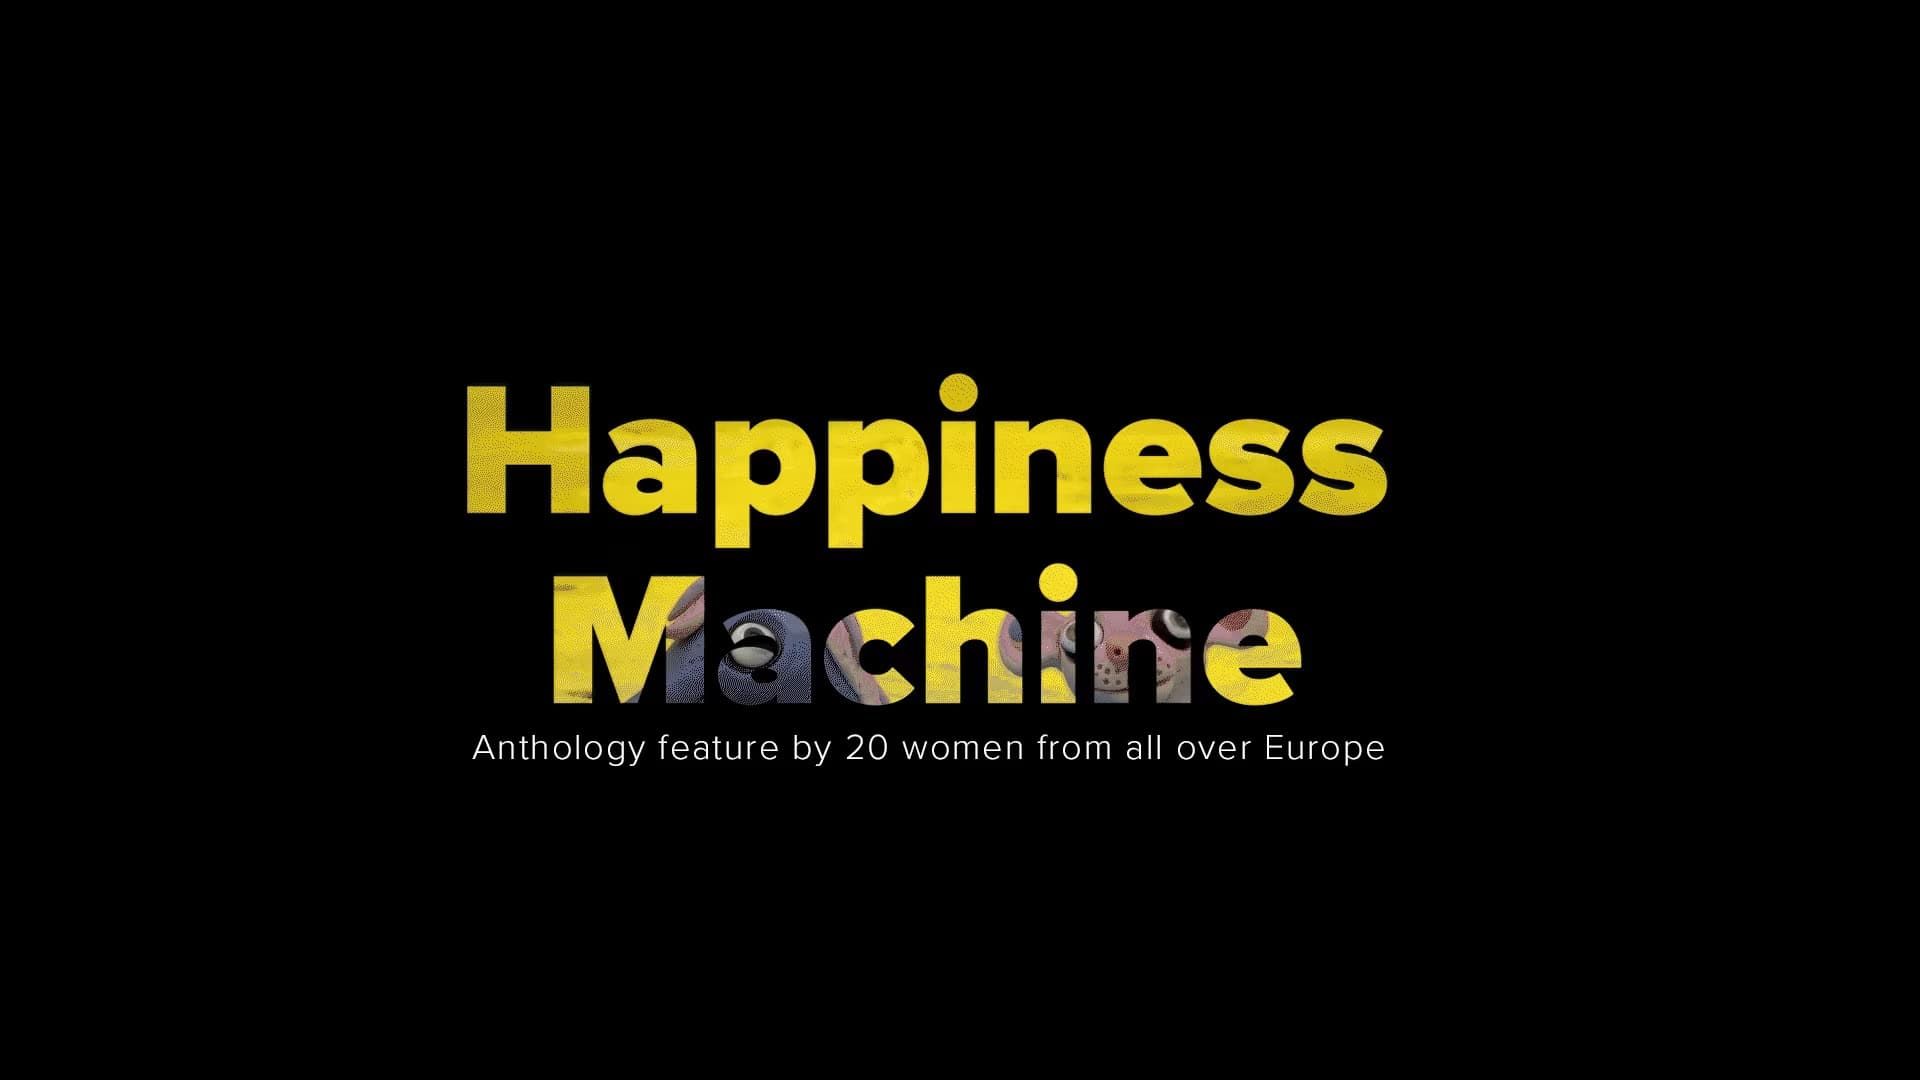 Happiness Machine background